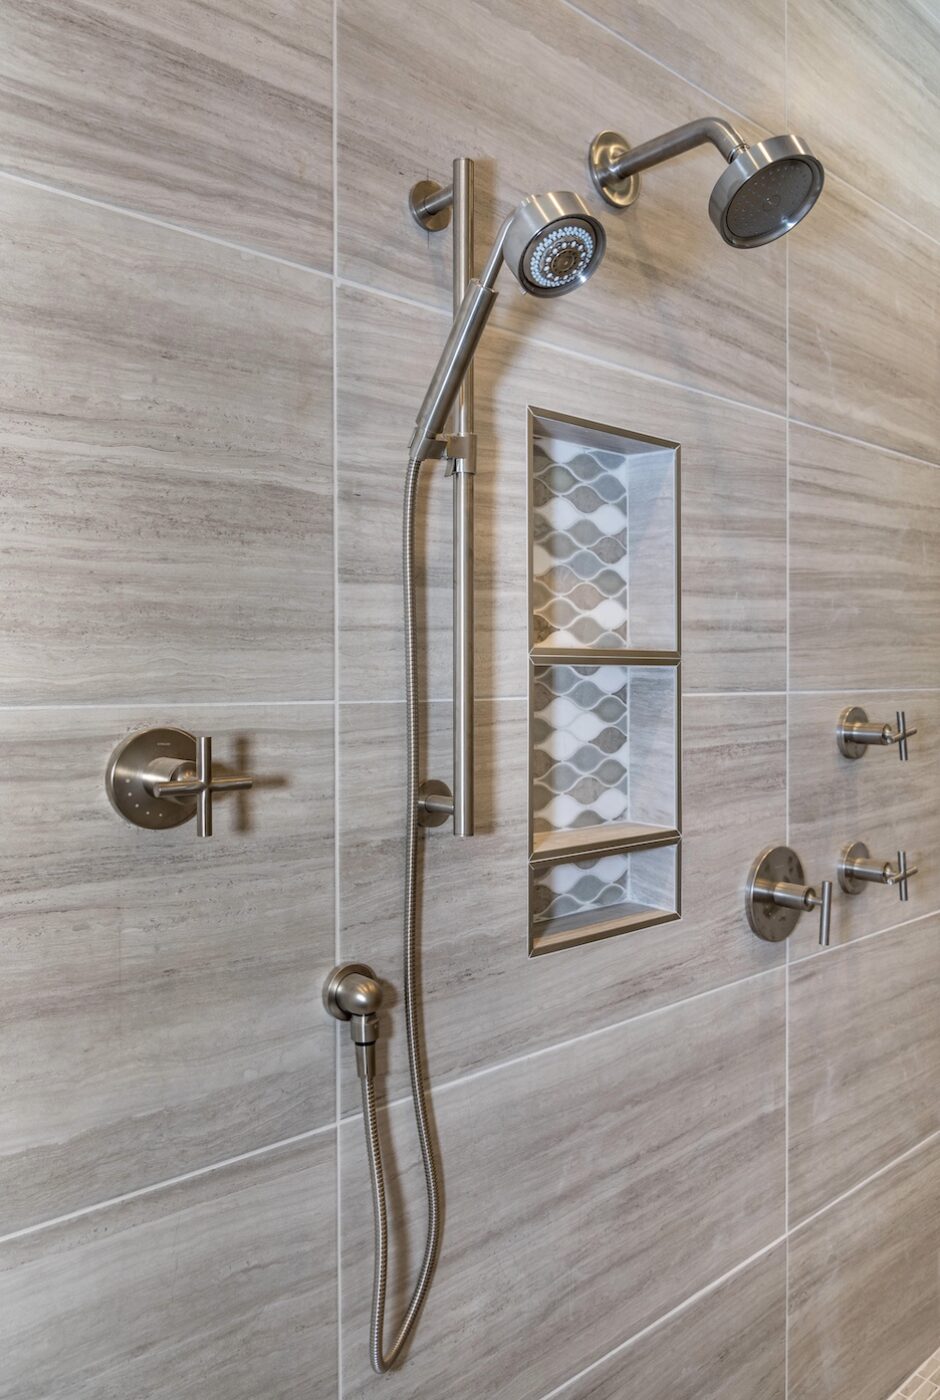 showerhead-detail-shower-nook-interior-design